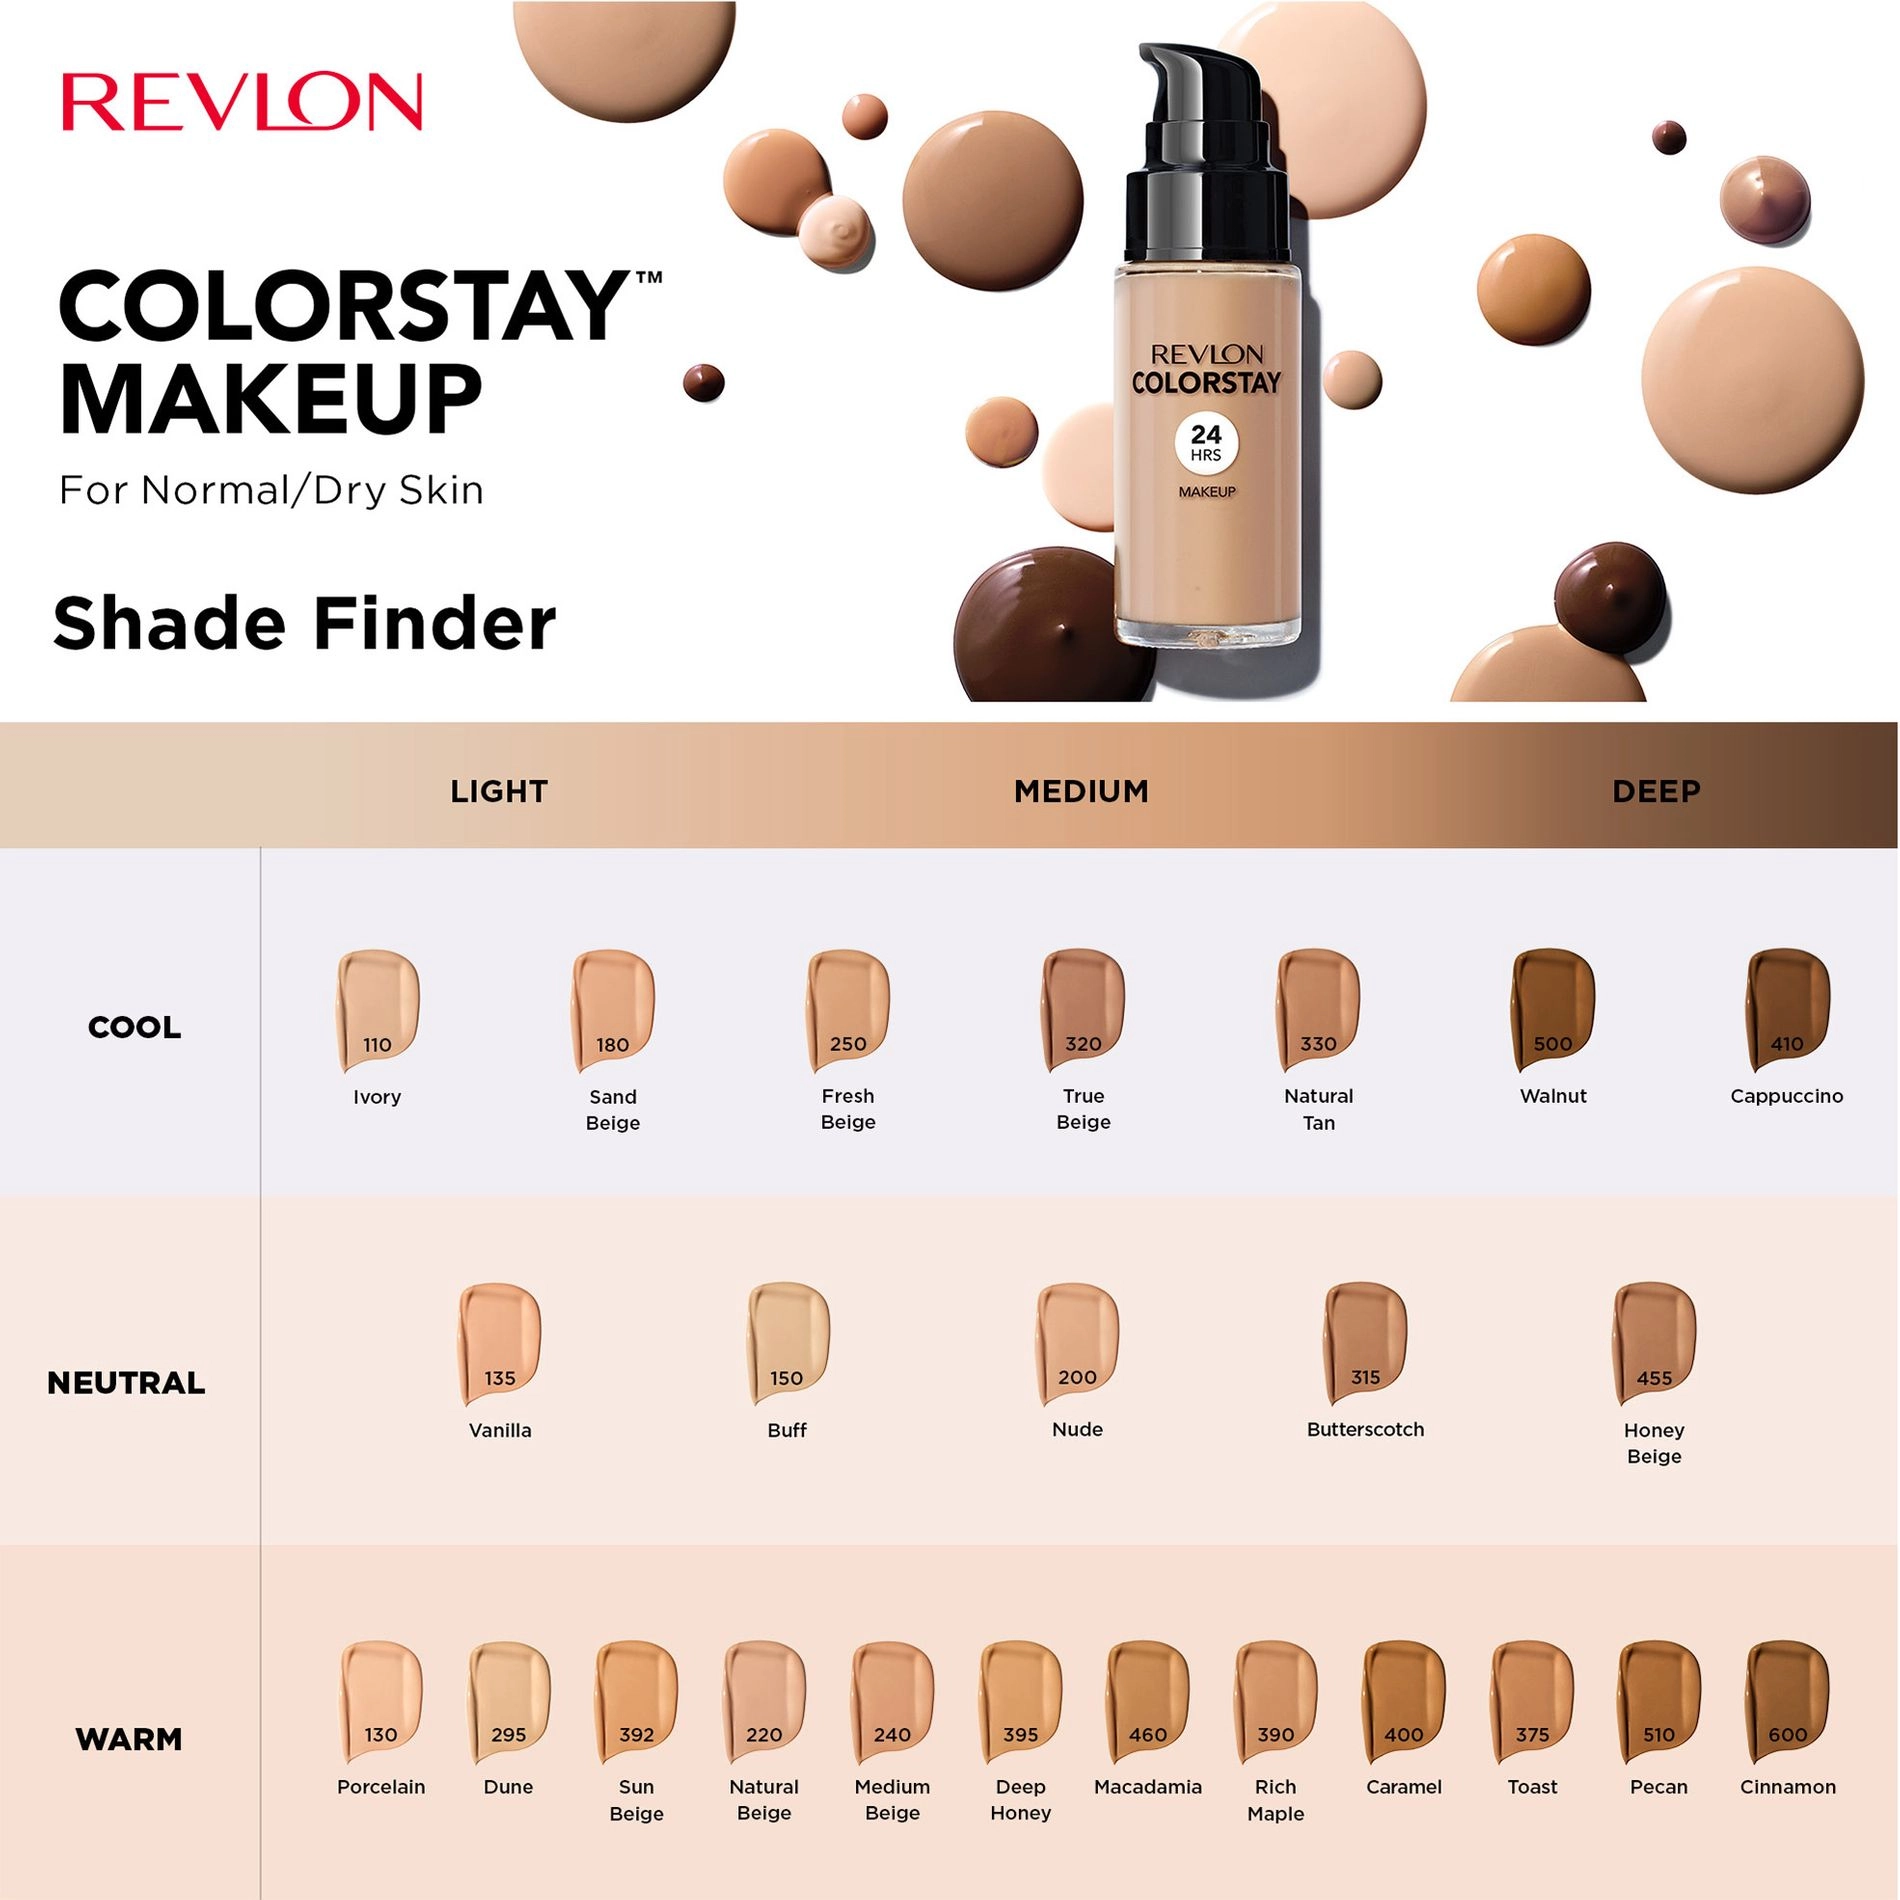 Revlon Тональный крем для лица ColorStay Makeup for Normal/Dry Skin SPF 20 для нормальной и сухой кожи, 240 Medium Beige, 30 мл - фото N4